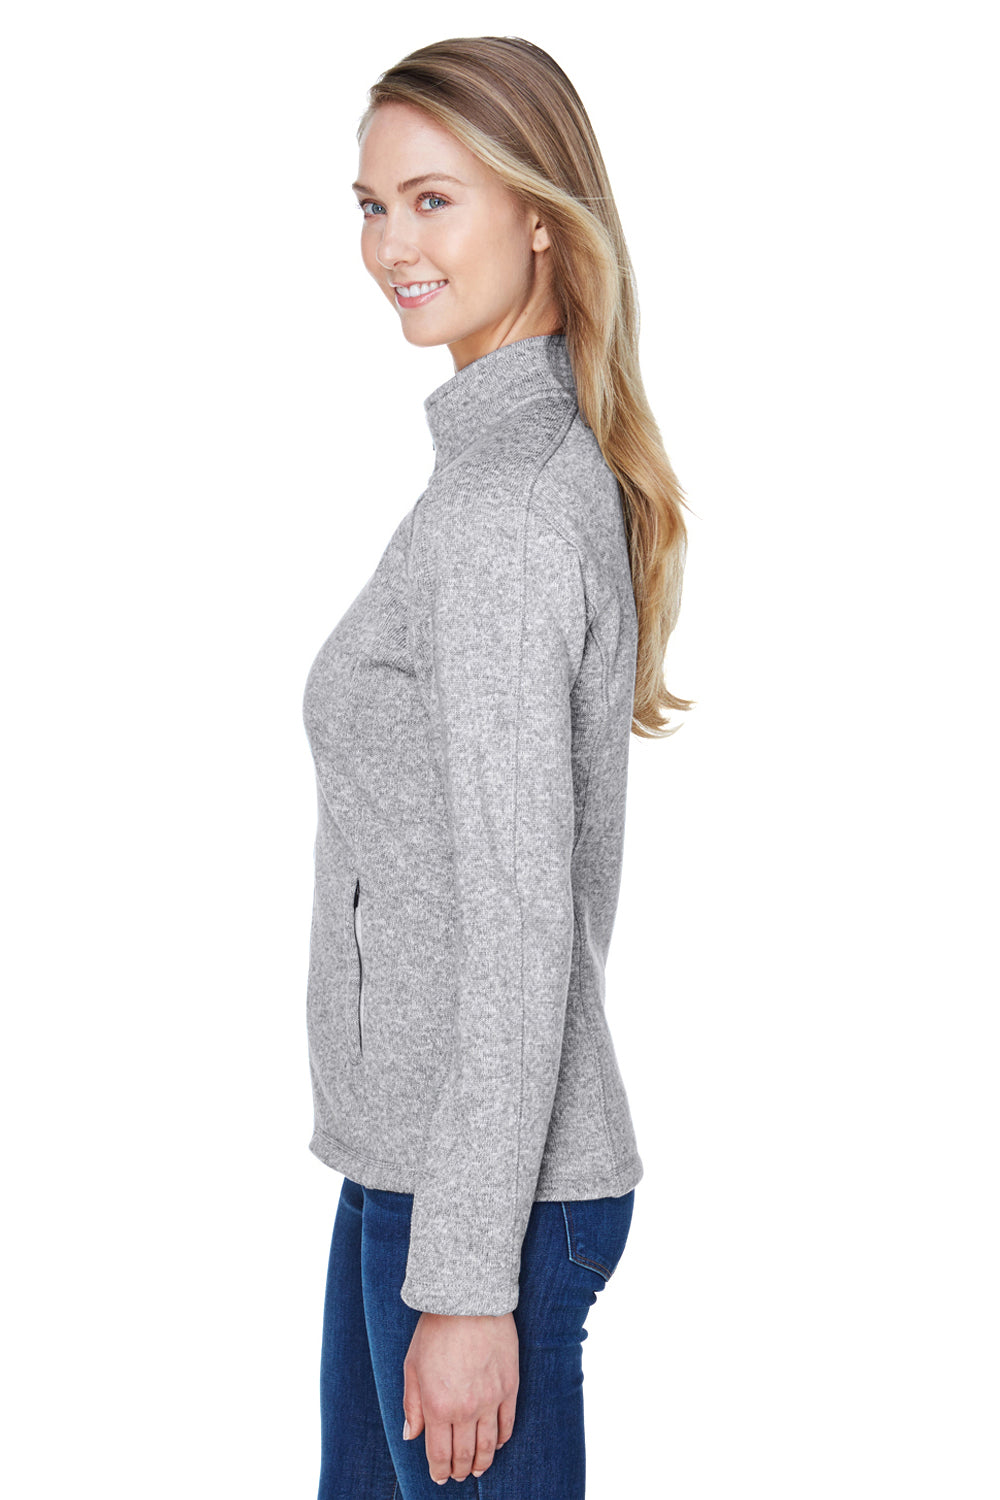 Devon & Jones DG793W Womens Bristol Full Zip Sweater Fleece Jacket Grey Side